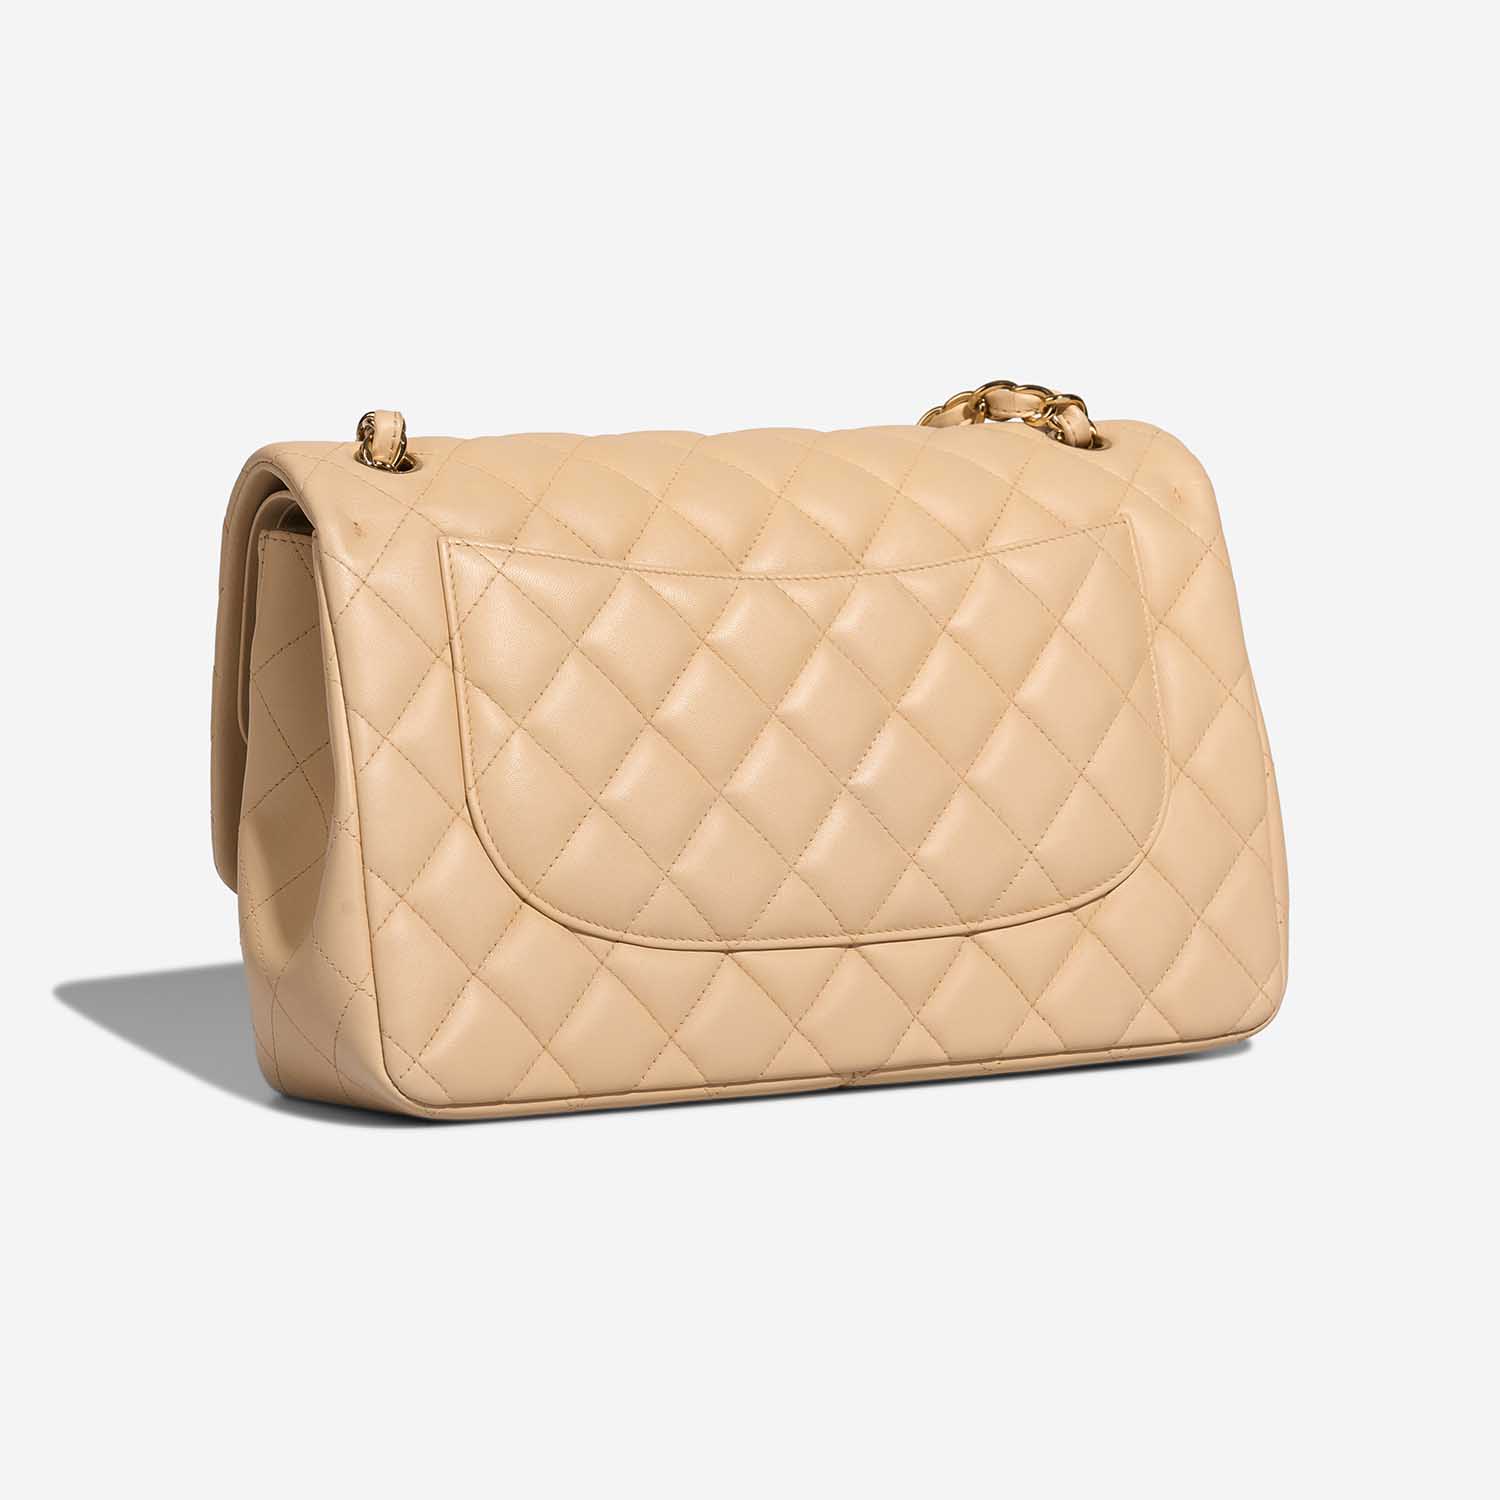 Chanel Timeless Jumbo Beige Side Back | Verkaufen Sie Ihre Designer-Tasche auf Saclab.com